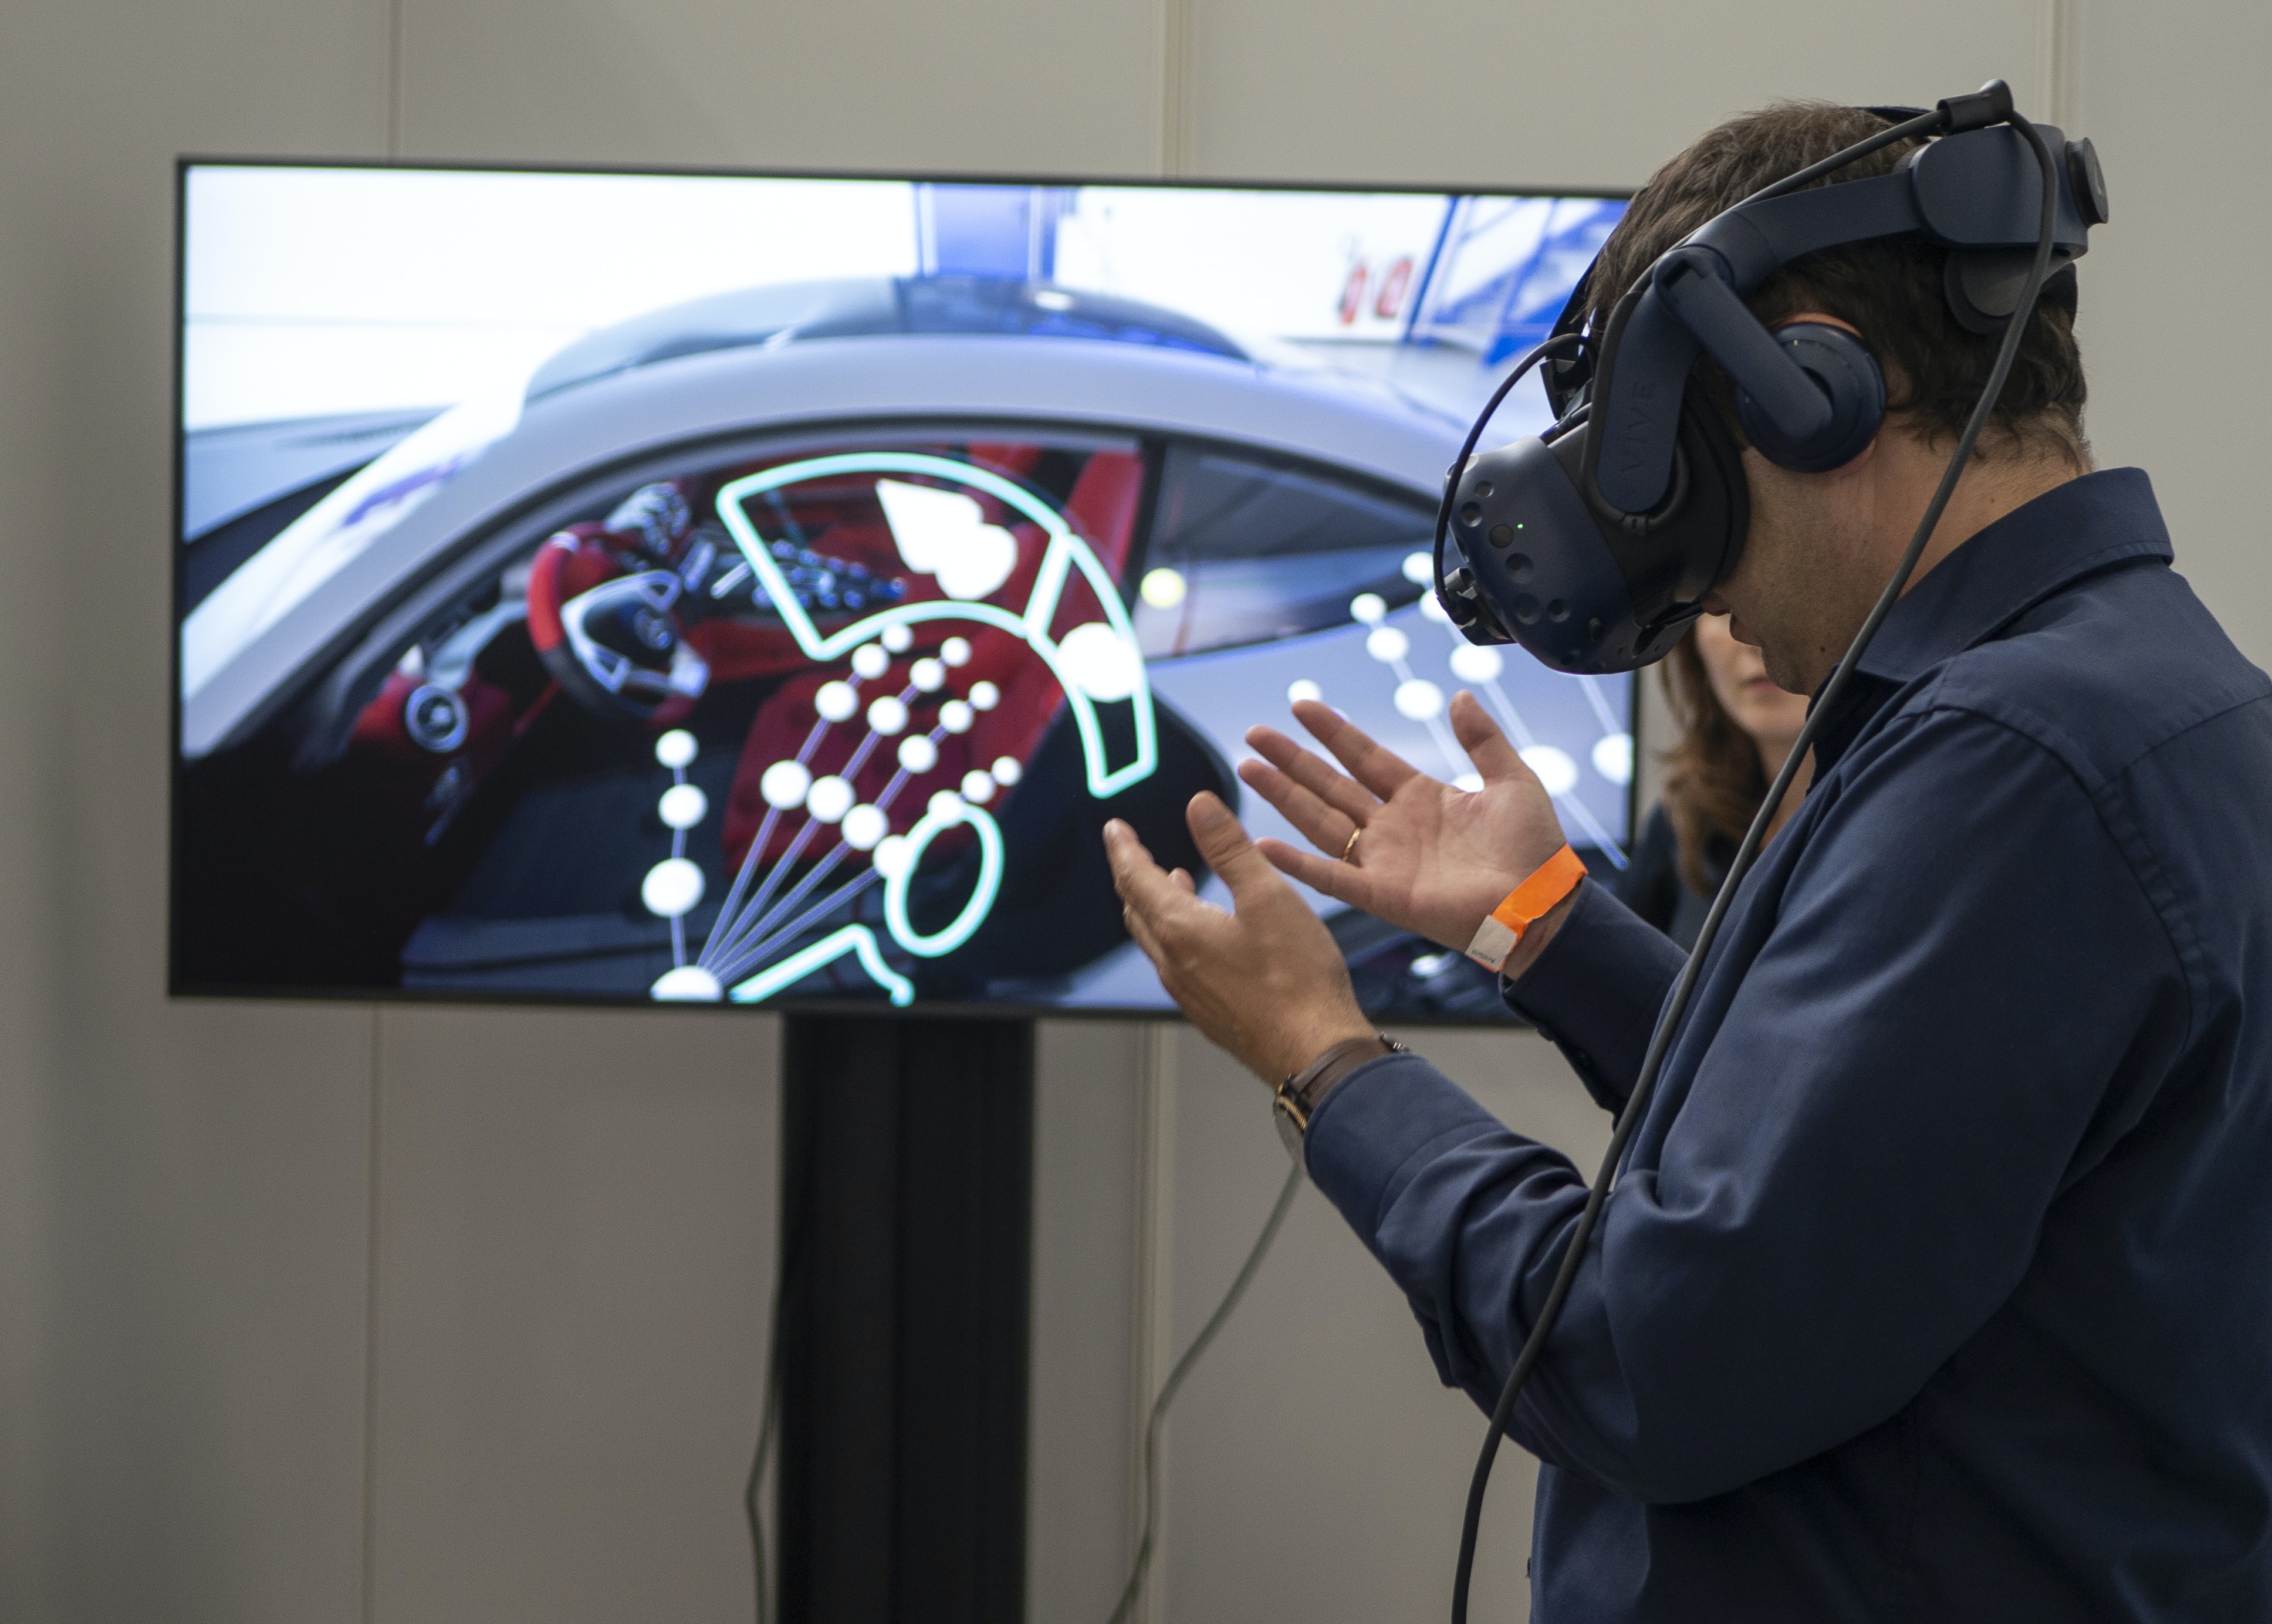 XR Expo 2019: utställning för virtuell verklighet (vr), augmented reality (ar), mixed reality (mr) och utökad verklighet (xr)